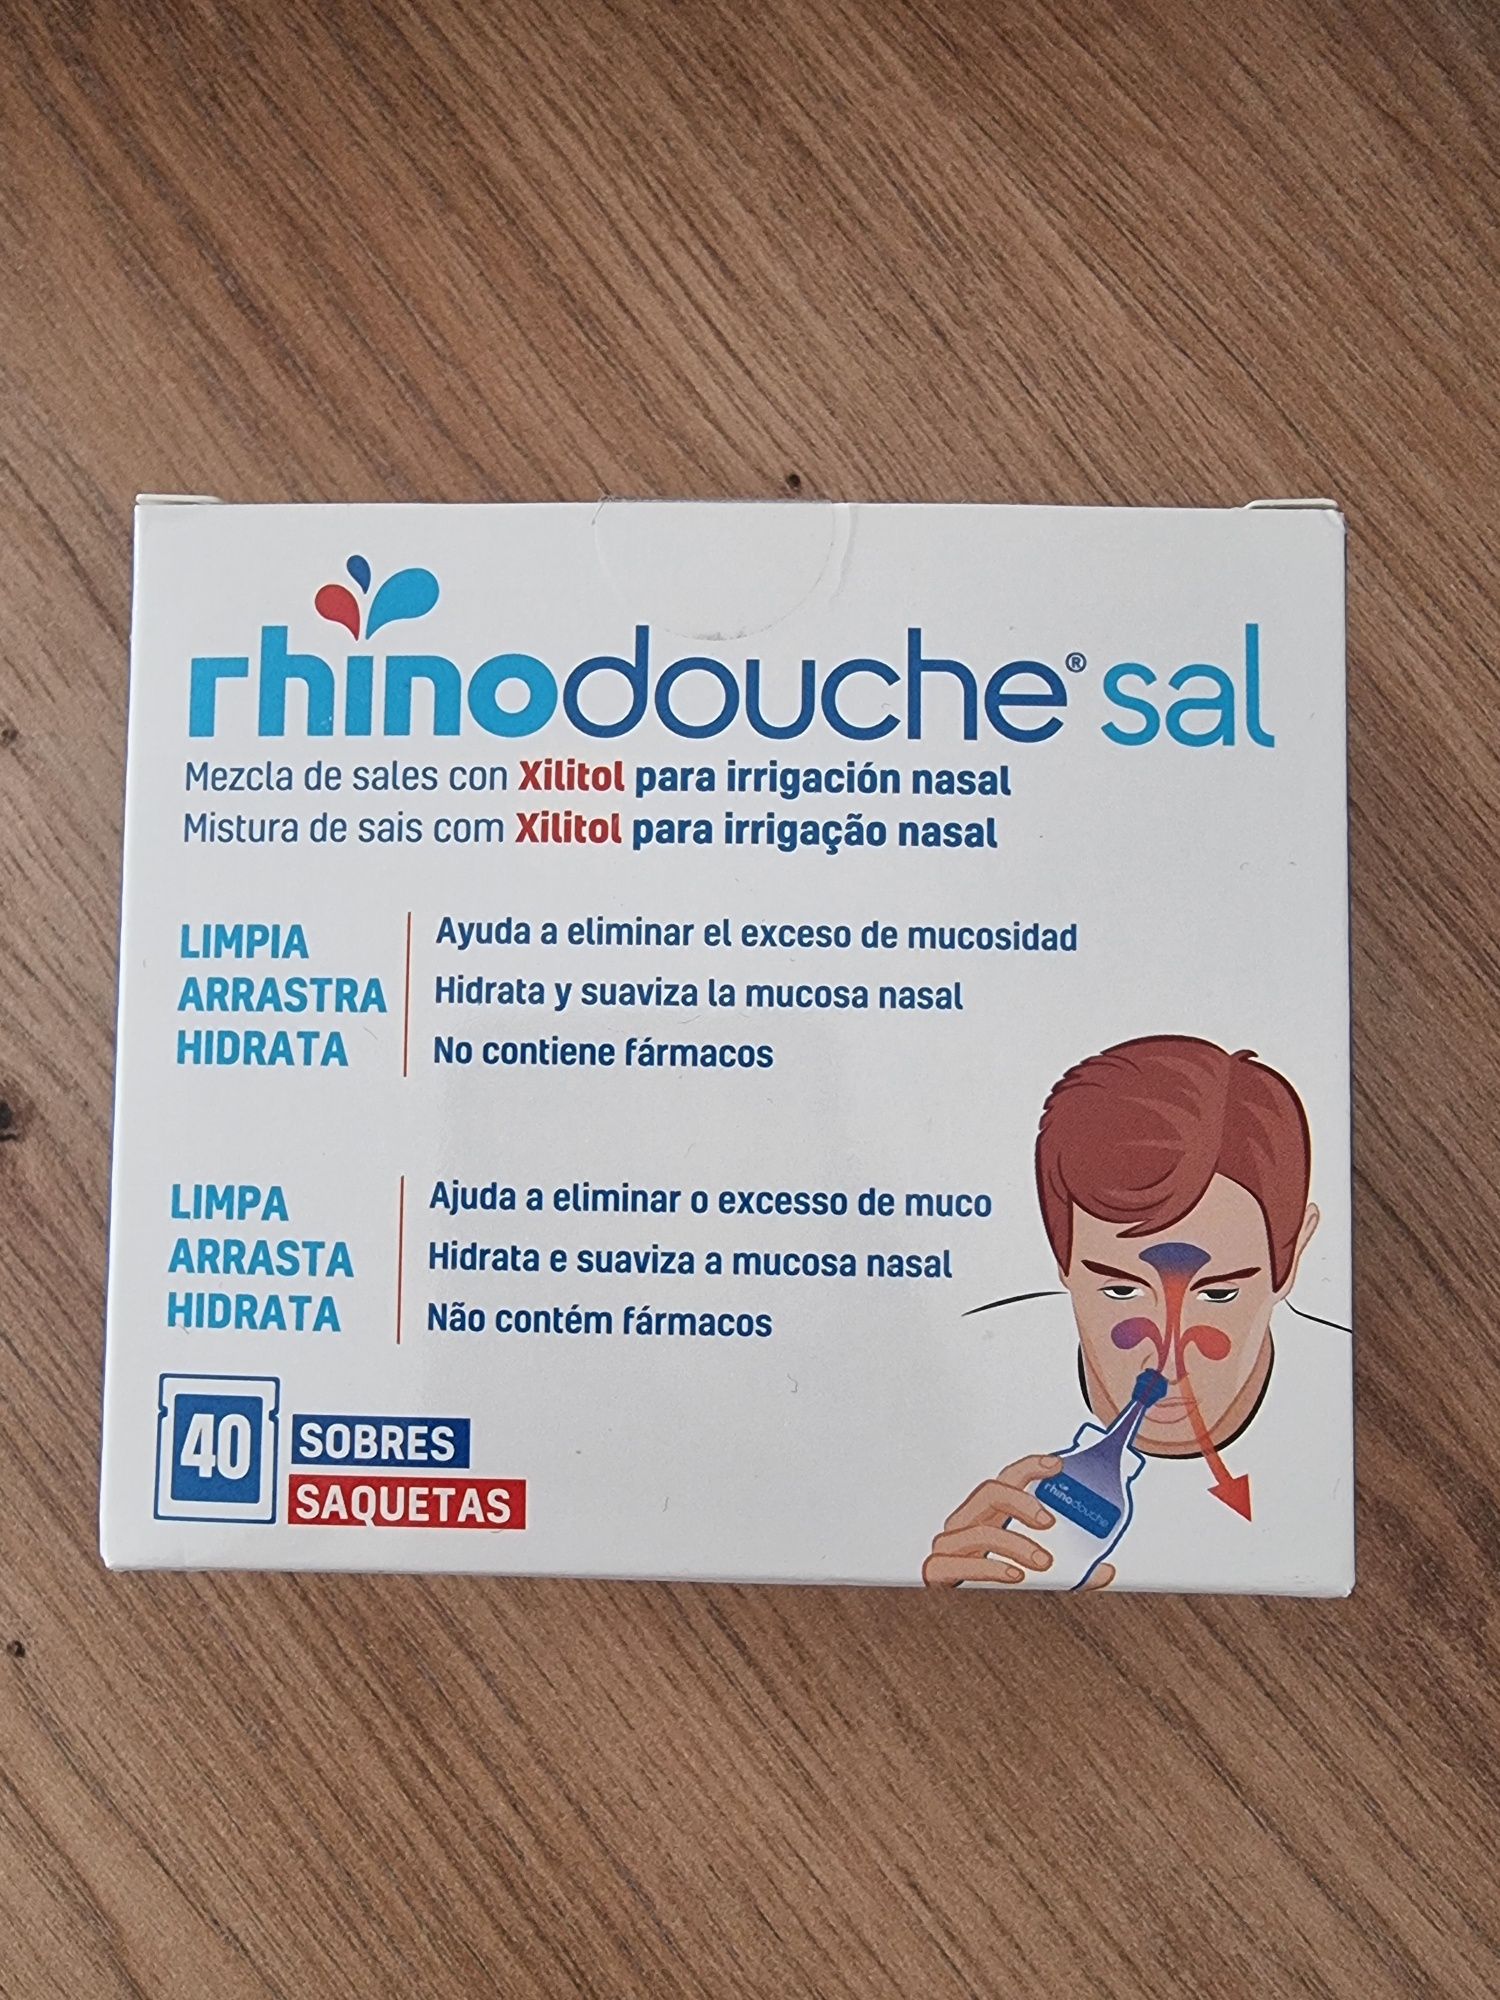 Rhinodouche saquetas Adulto
Irrigação nasal com Rhinodouche®